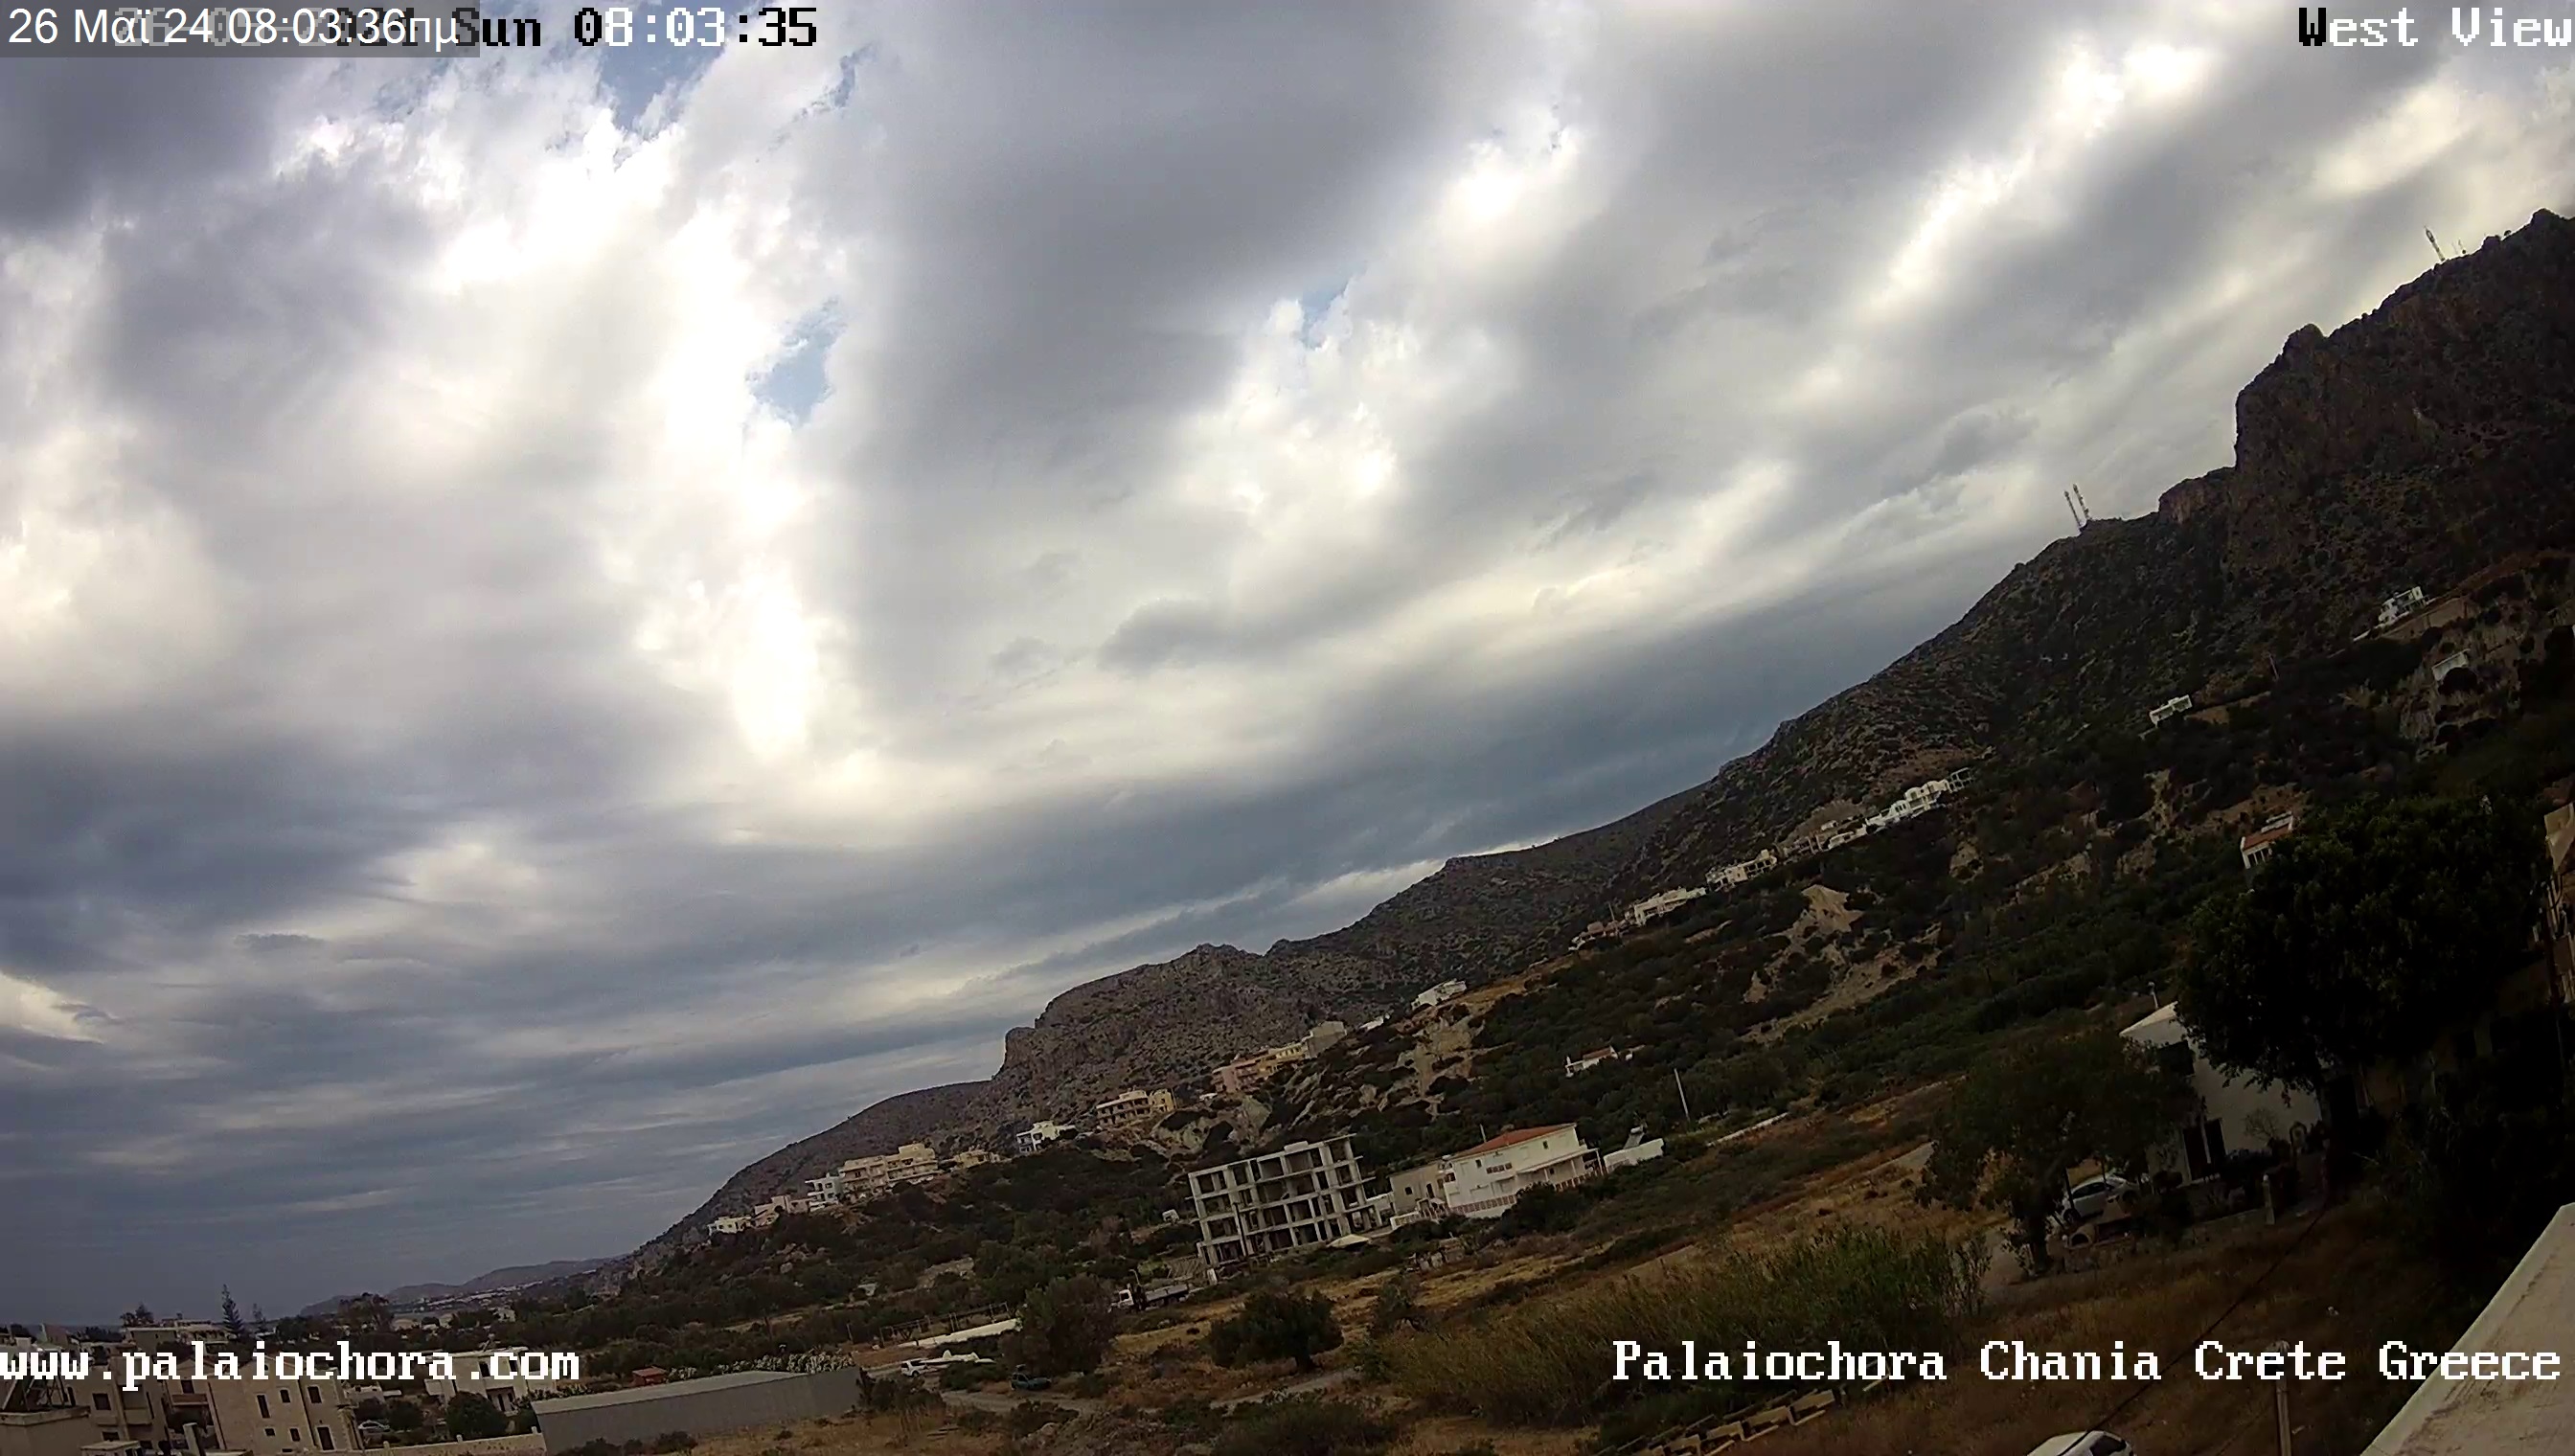 Paleochora (Kreta) Fre. 08:08